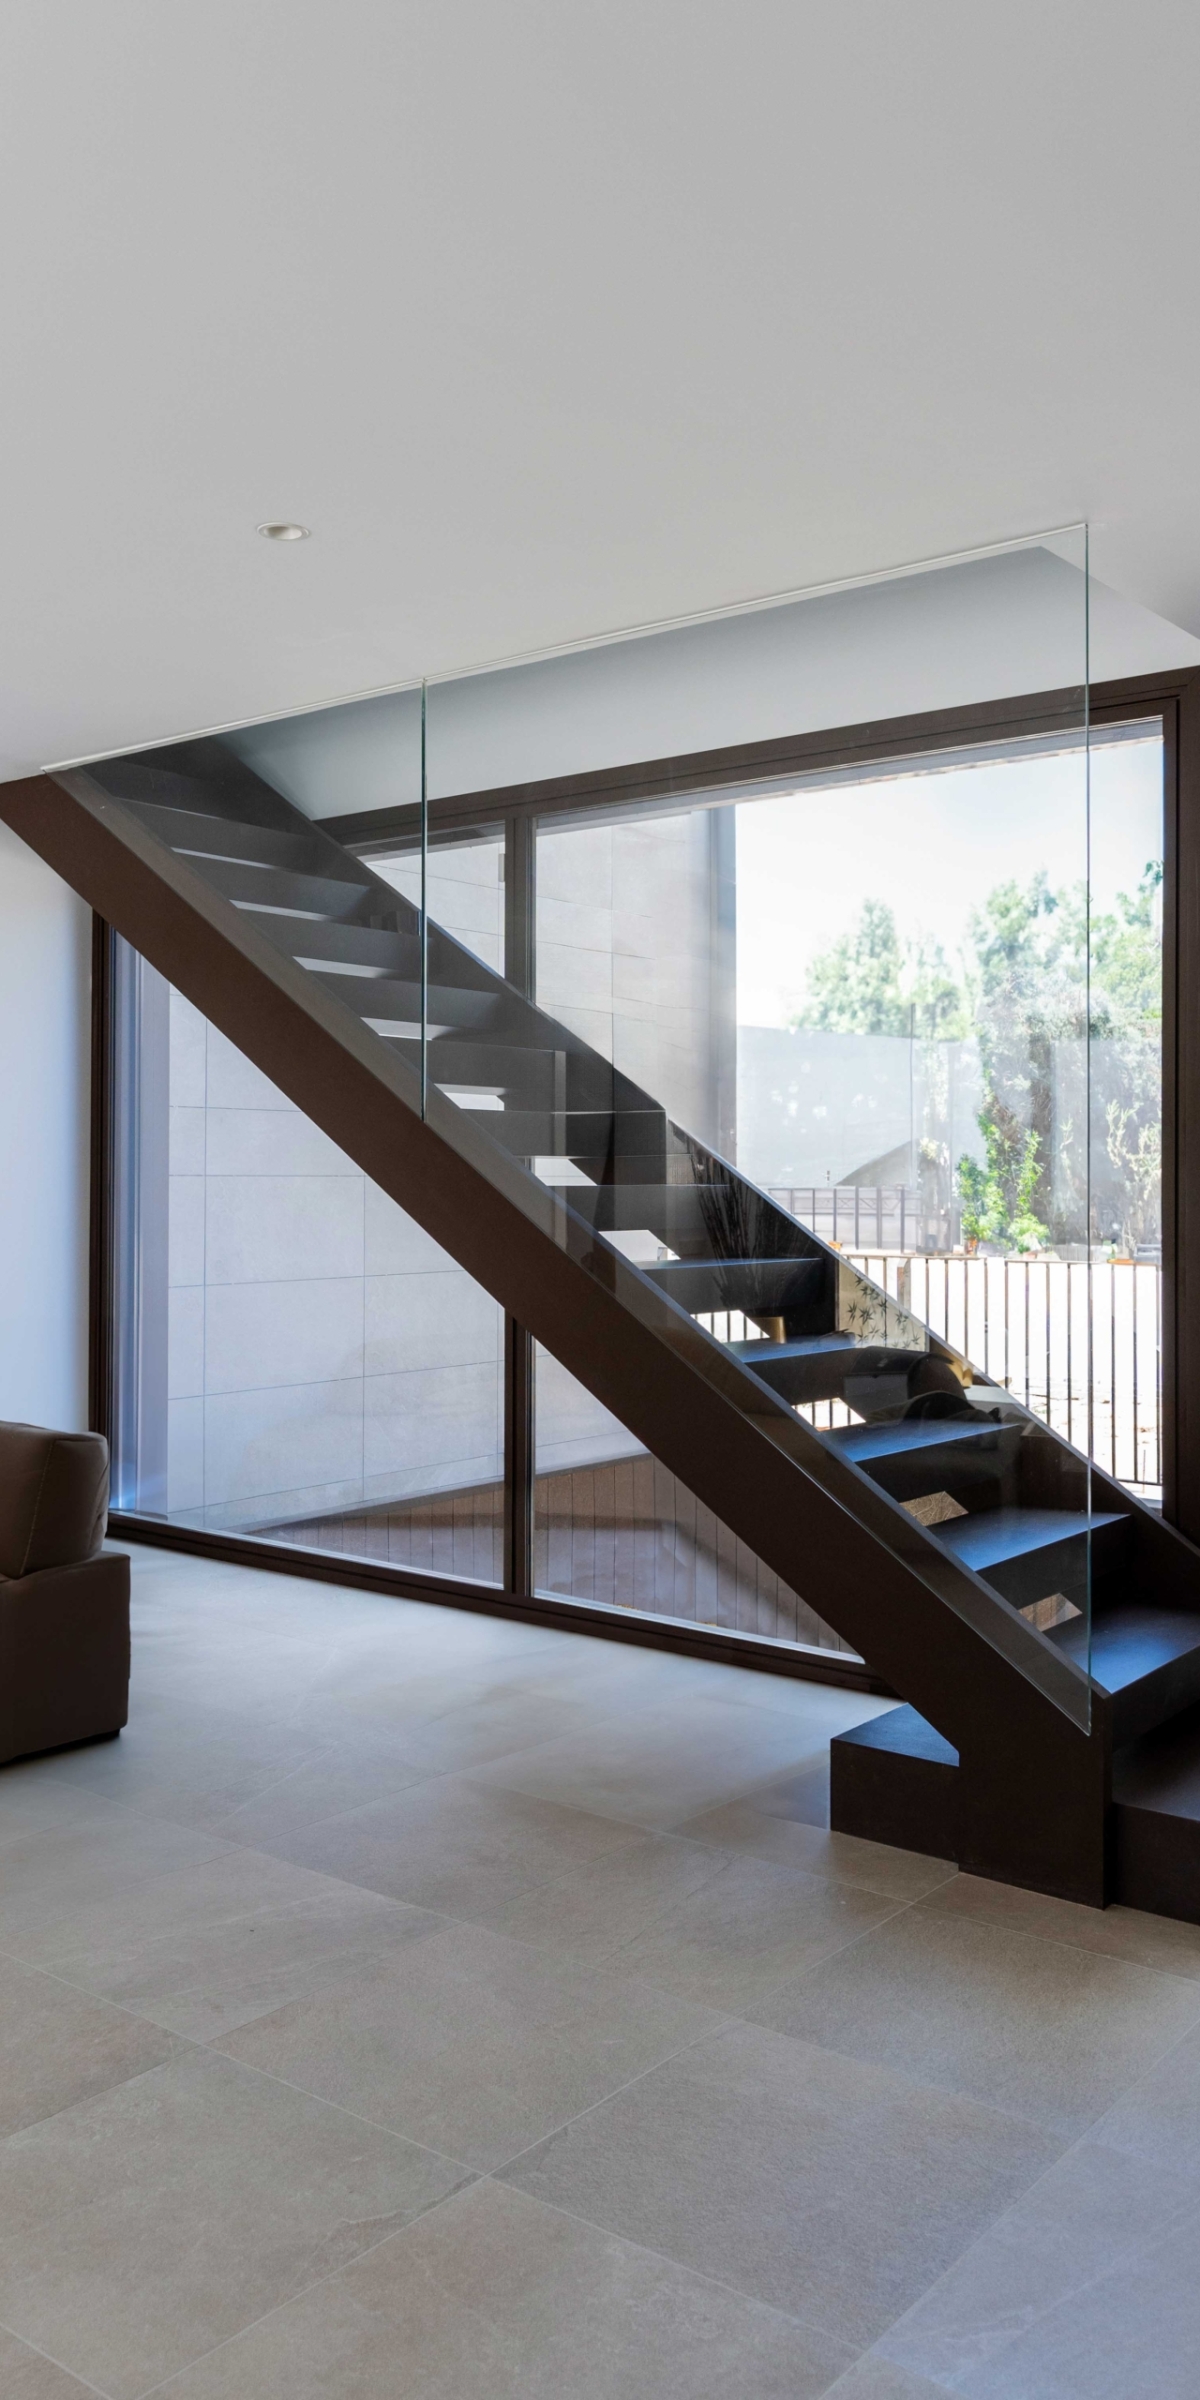 Diseño de interior moderno en casa de lujo, escaleras centradas voladas